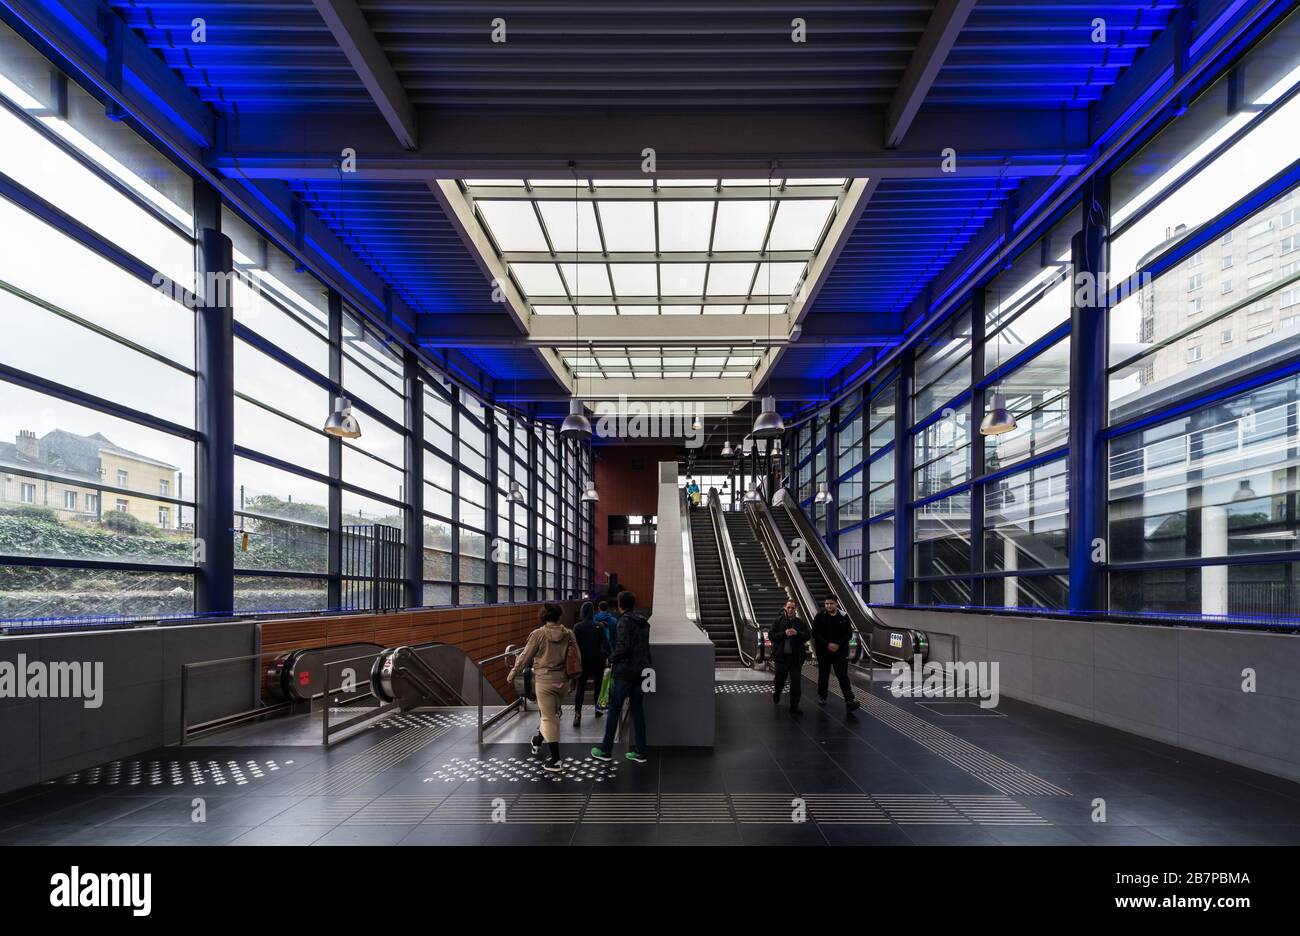 La estación de metro y tranvía Gare de l'Ouest, un importante centro de transporte público, Molenbeek, Bruselas, Bélgica Foto de stock